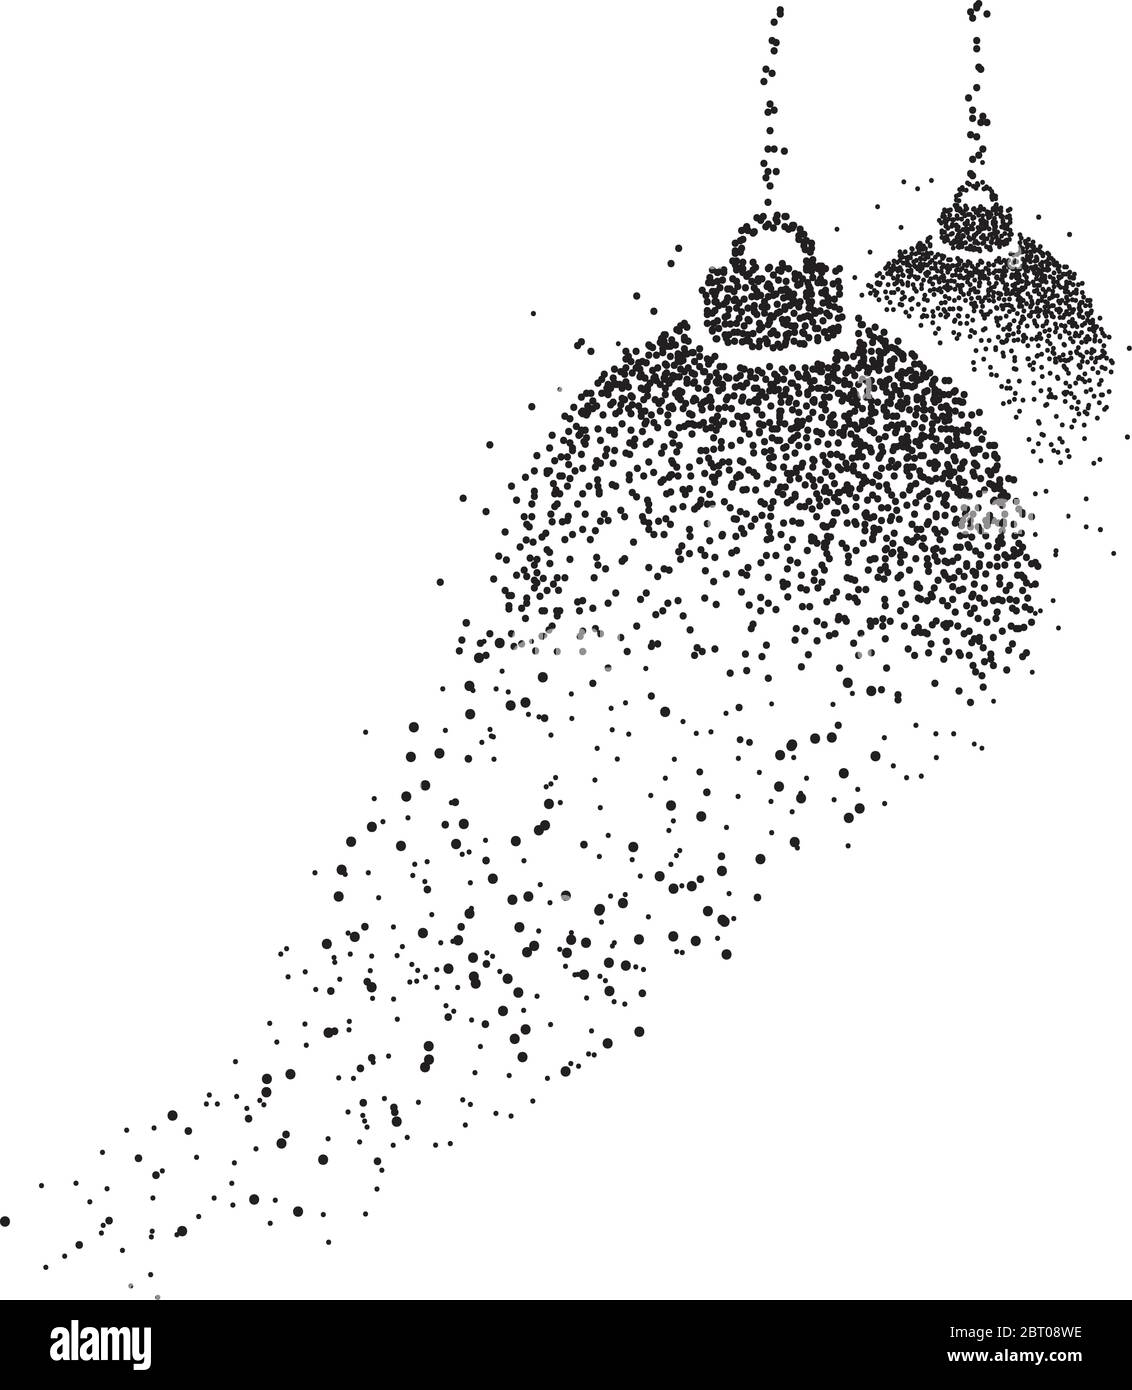 Les boules de Noël se mades avec un tracé de points qui volent pour dessiner la figure sur fond blanc Illustration de Vecteur